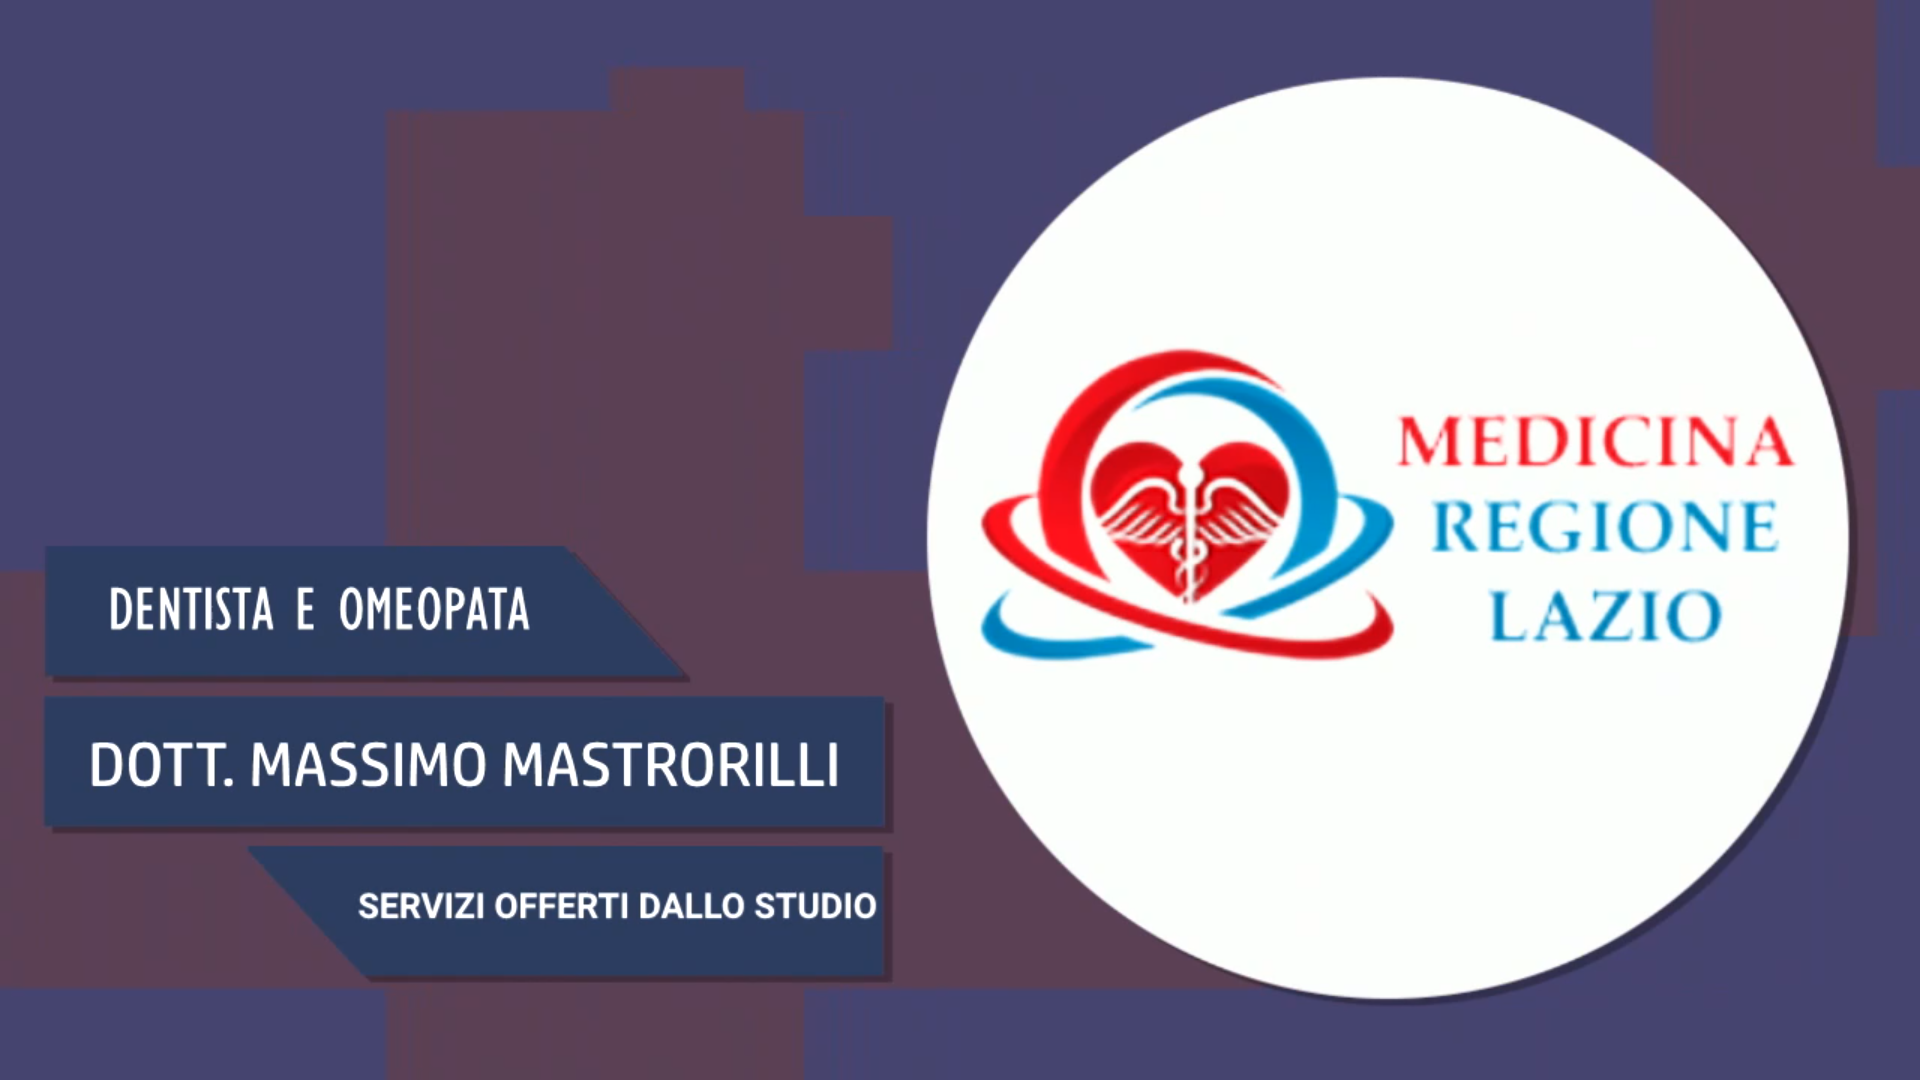 Intervista alla Dott. Massimo Mastrorilli – Servizi offerti dallo studio